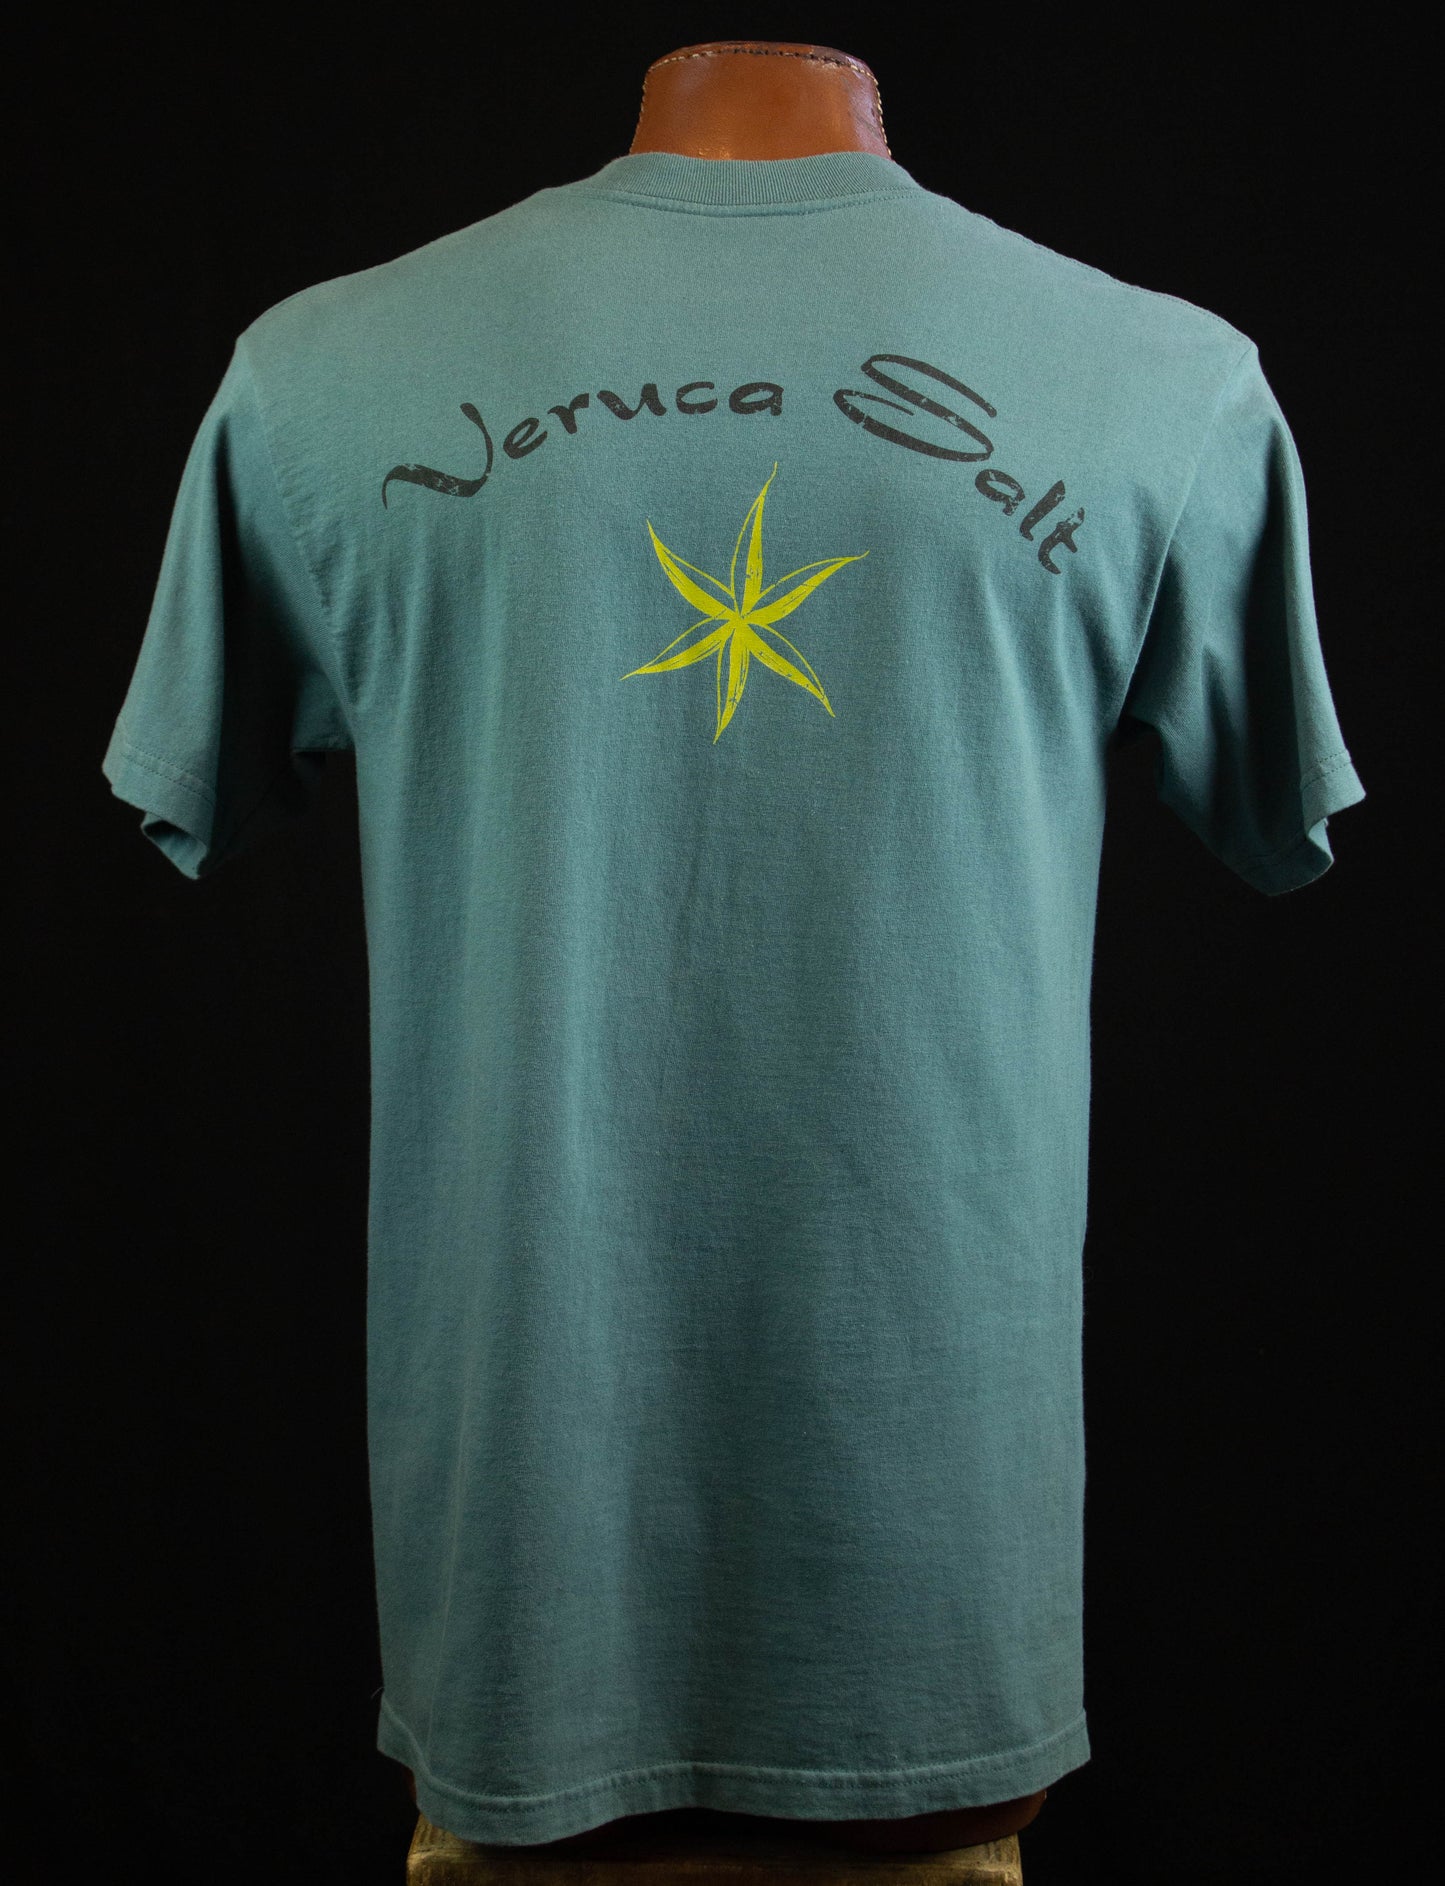 Vintage Veruca Salt Concert T Shirt 90s Volcano Teal Green Large